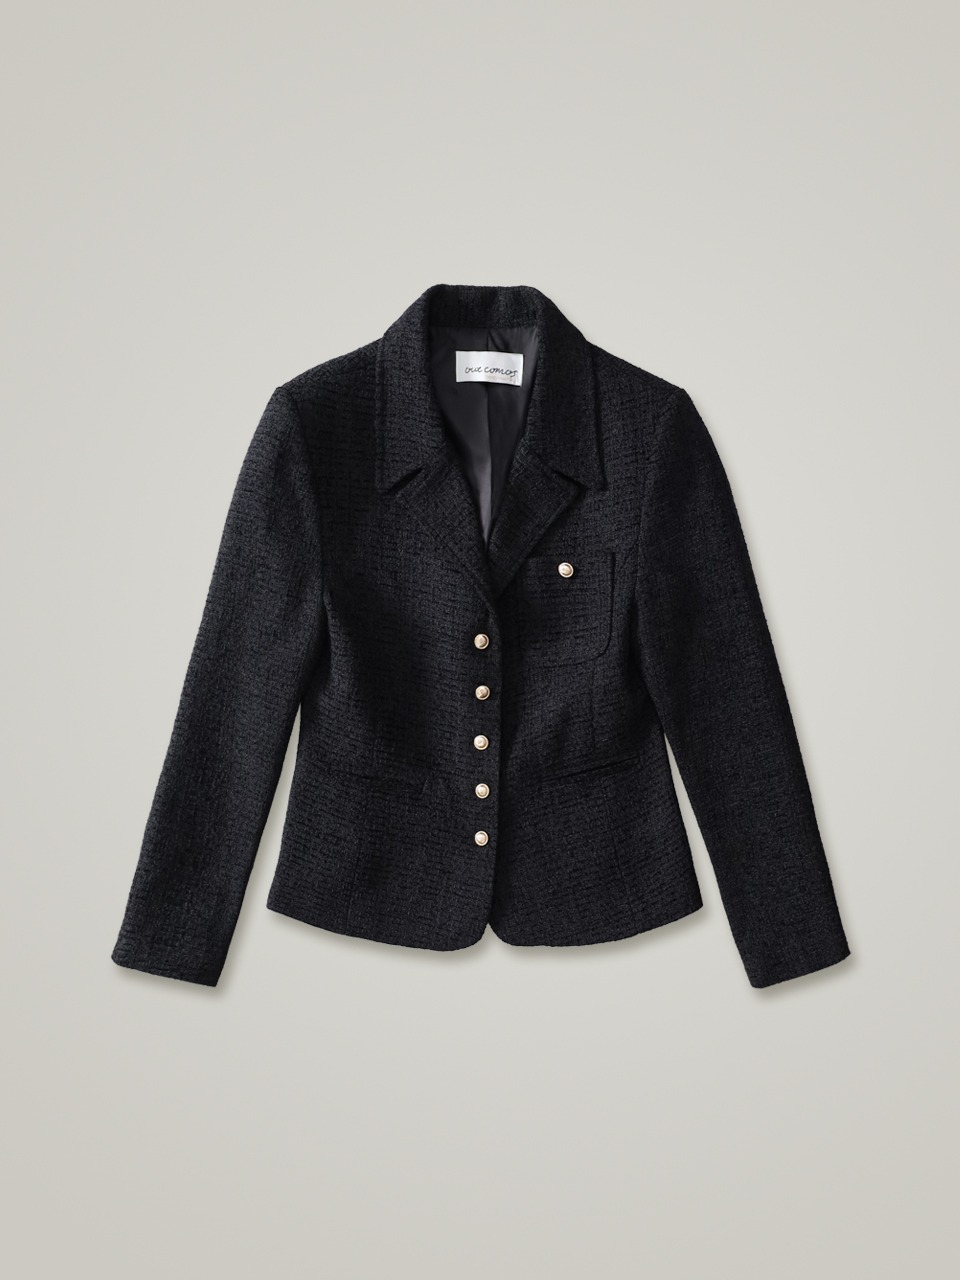 comos 959 stitch collar tweed jacket (black)